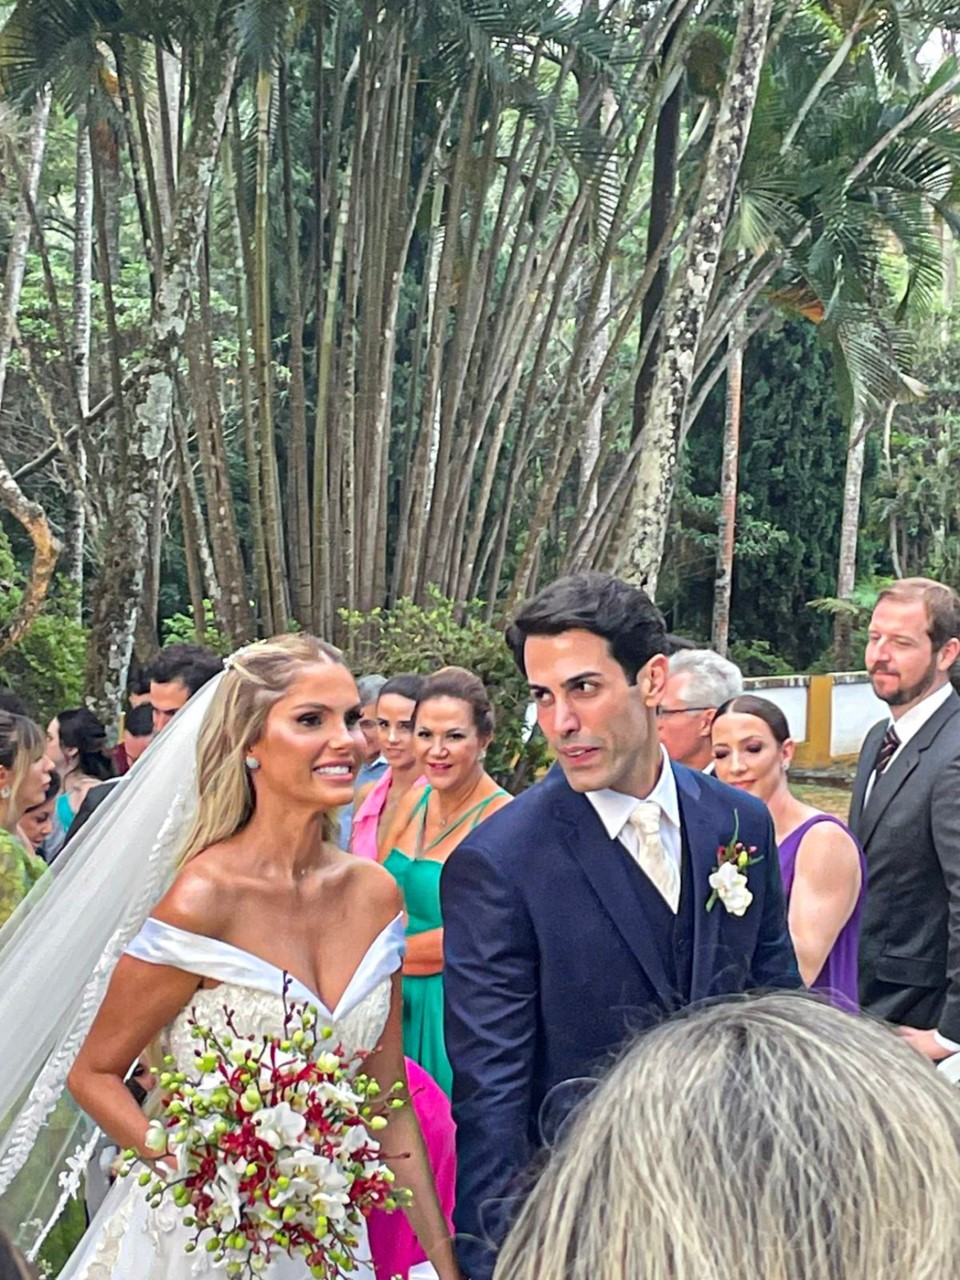 Casamento de Bárbara Evans e Gustavo Theodoro (Créditos: AgNews)